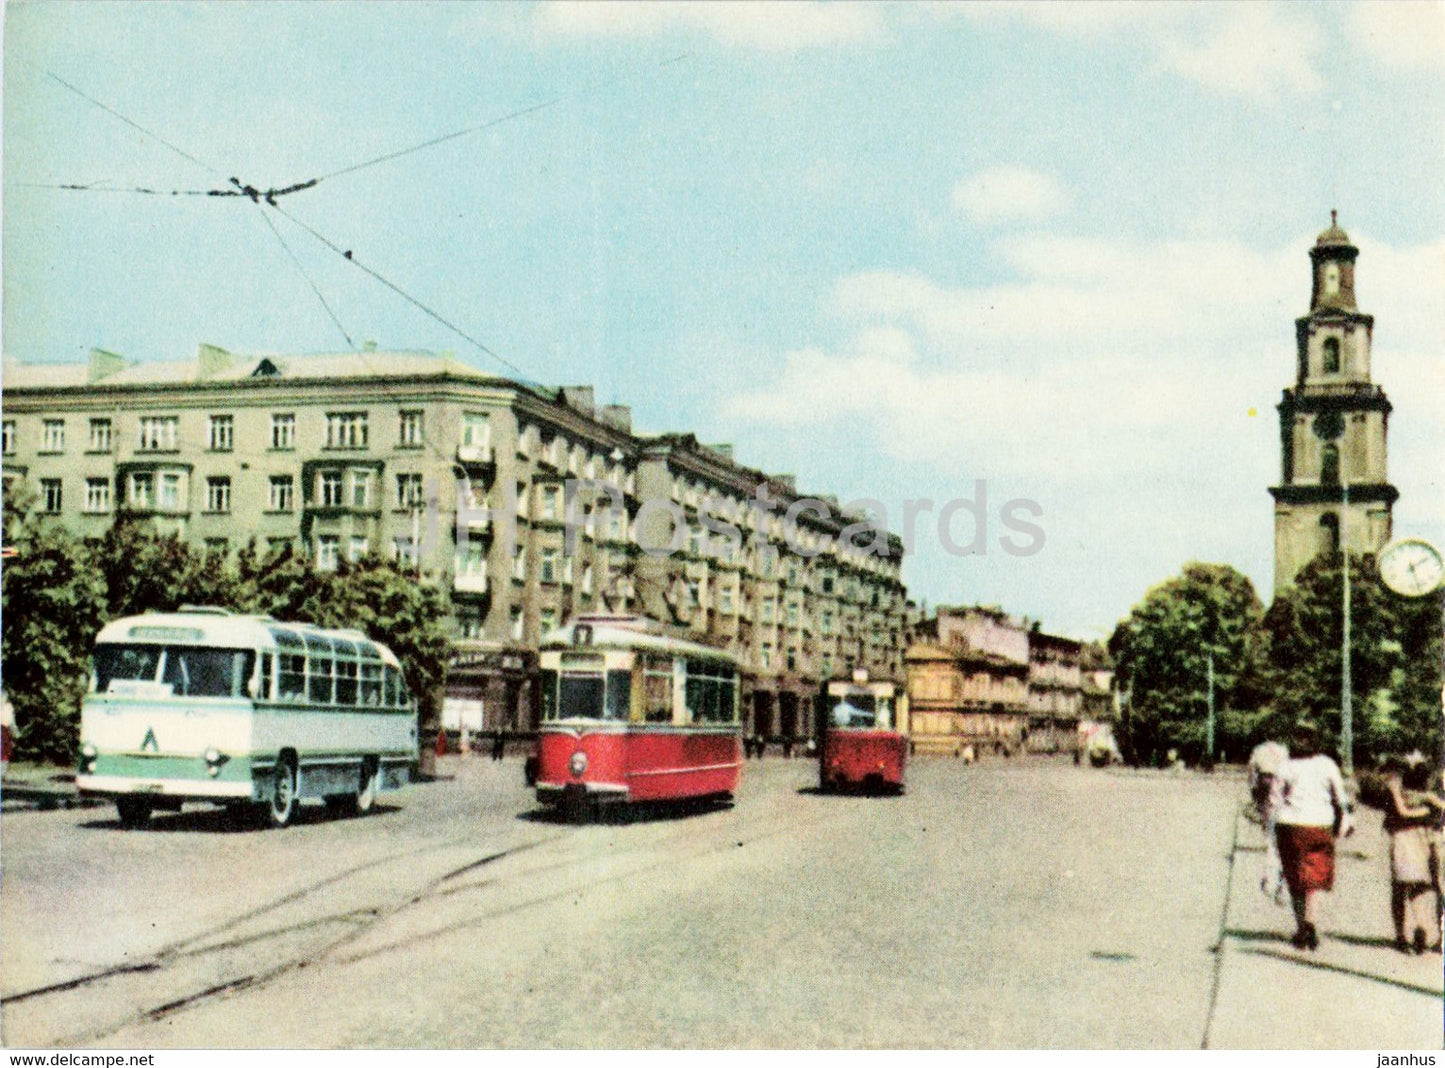 Liepaja - Lenin street - bus - tram - 1963 - Latvia USSR - unused - JH Postcards